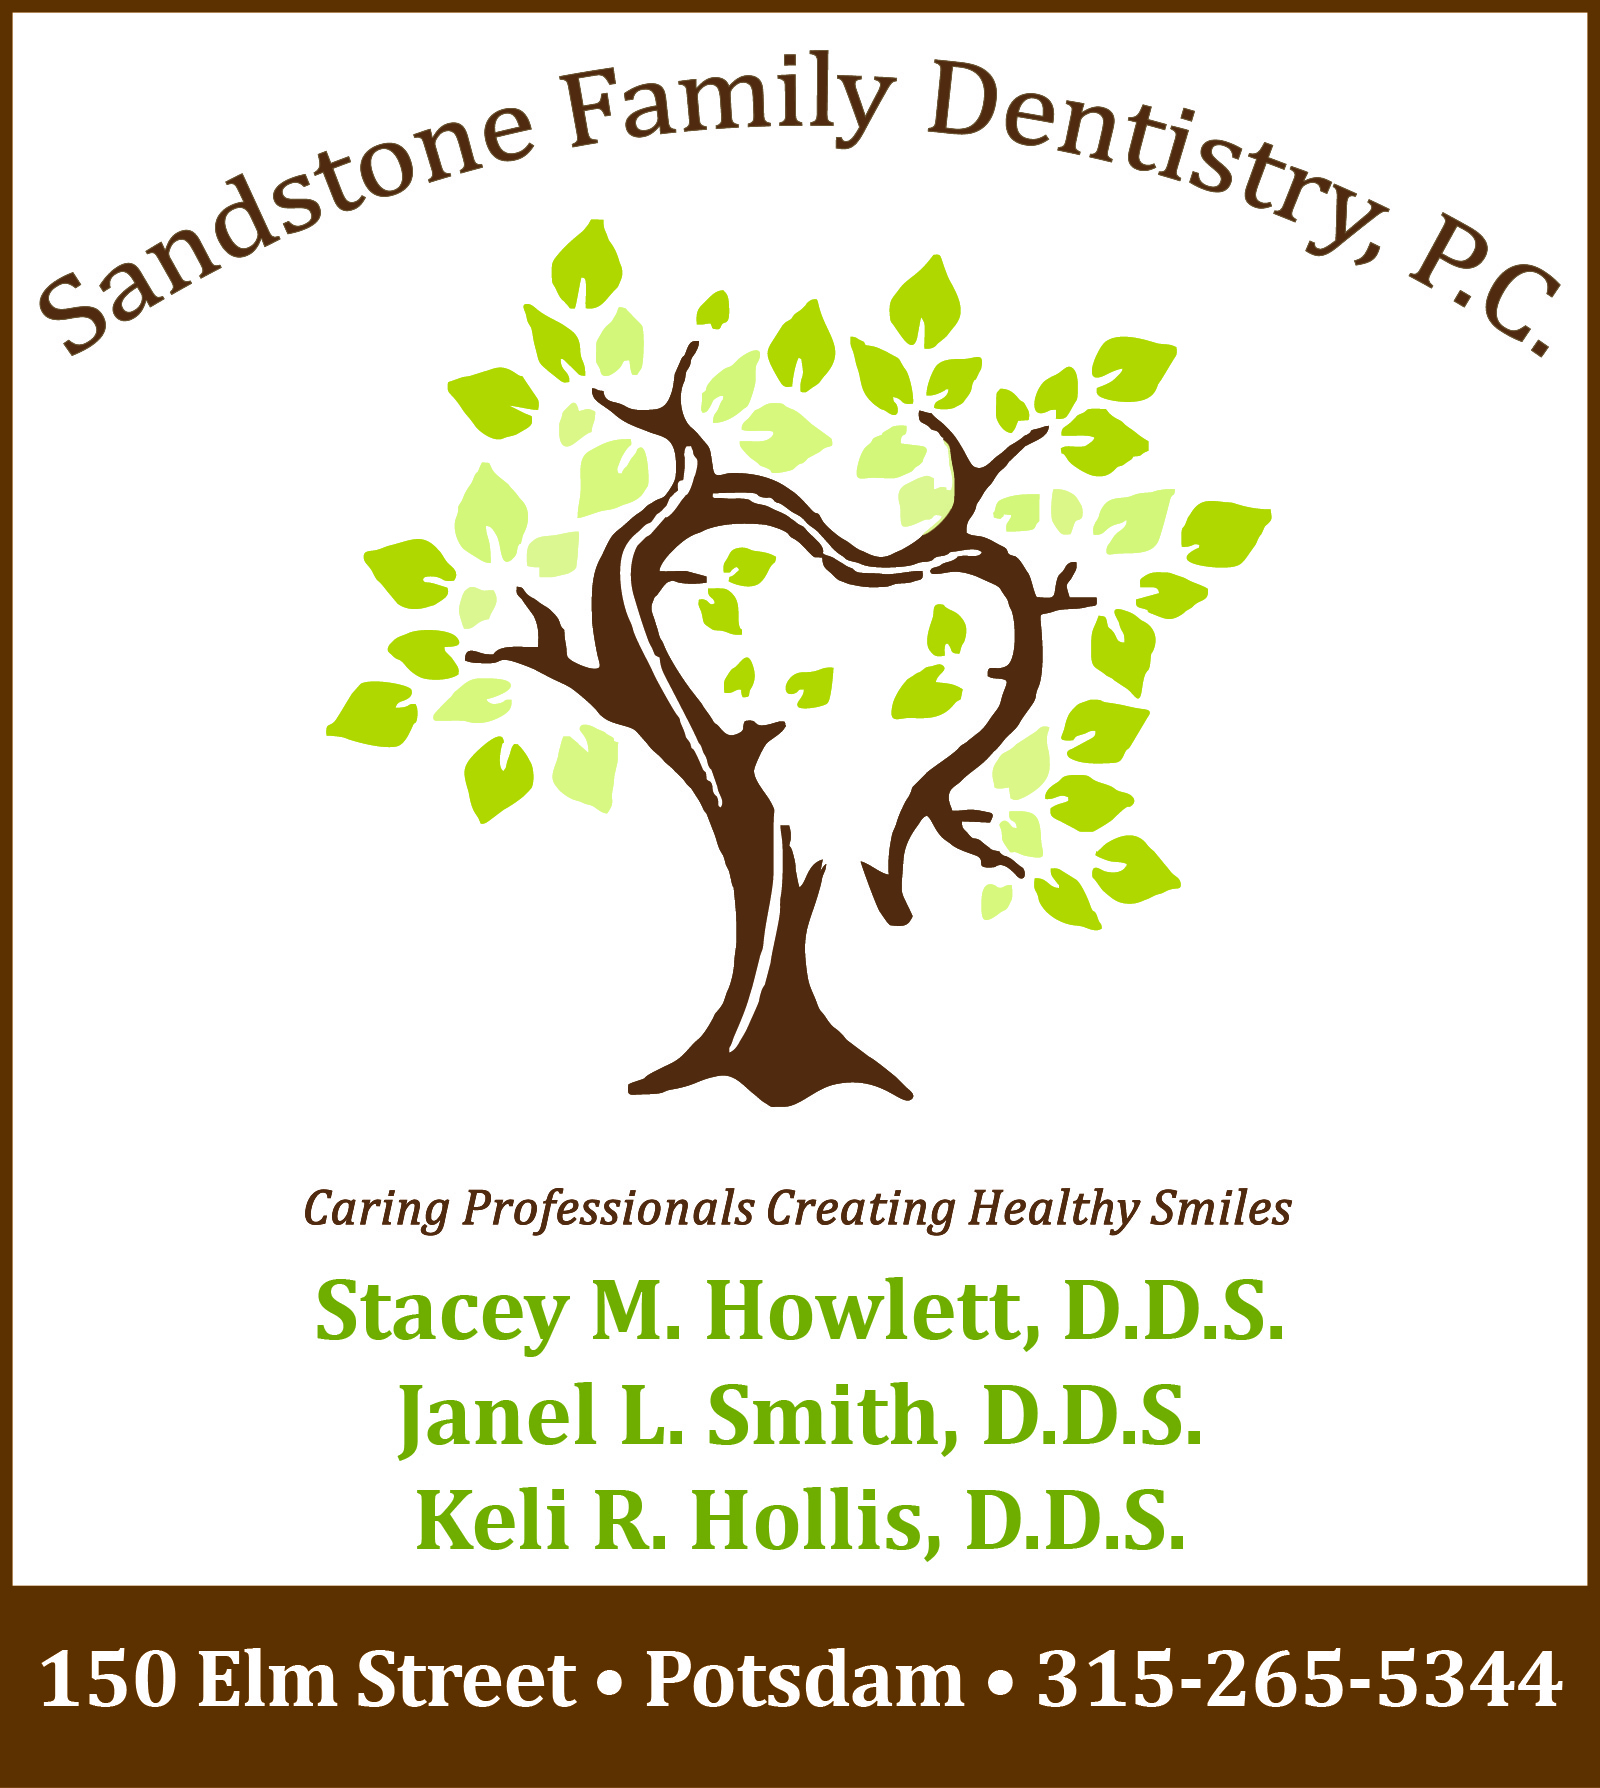 Sandstone Family Dentistry